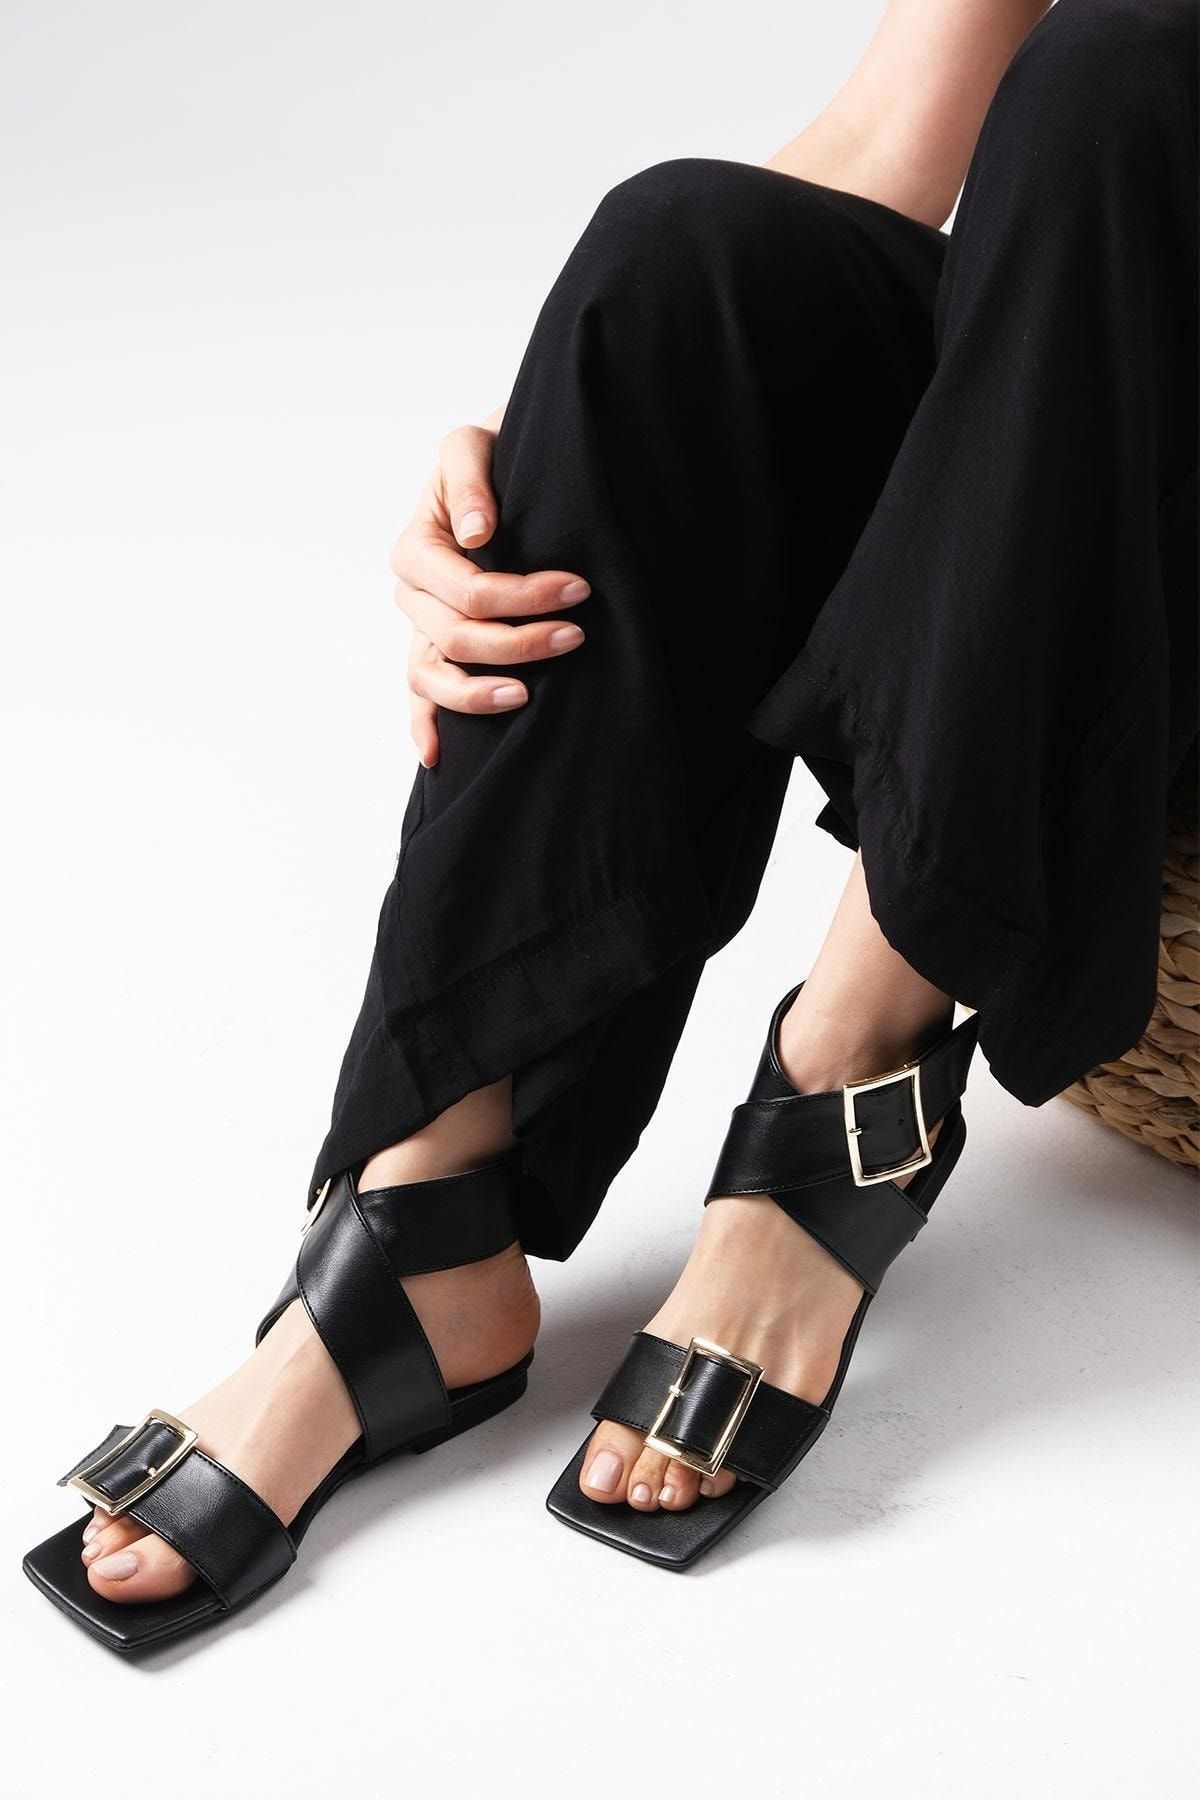 Mio Gusto Simone Siyah Renk Çapraz Bantlı Topuksuz Düz Kadın Sandalet